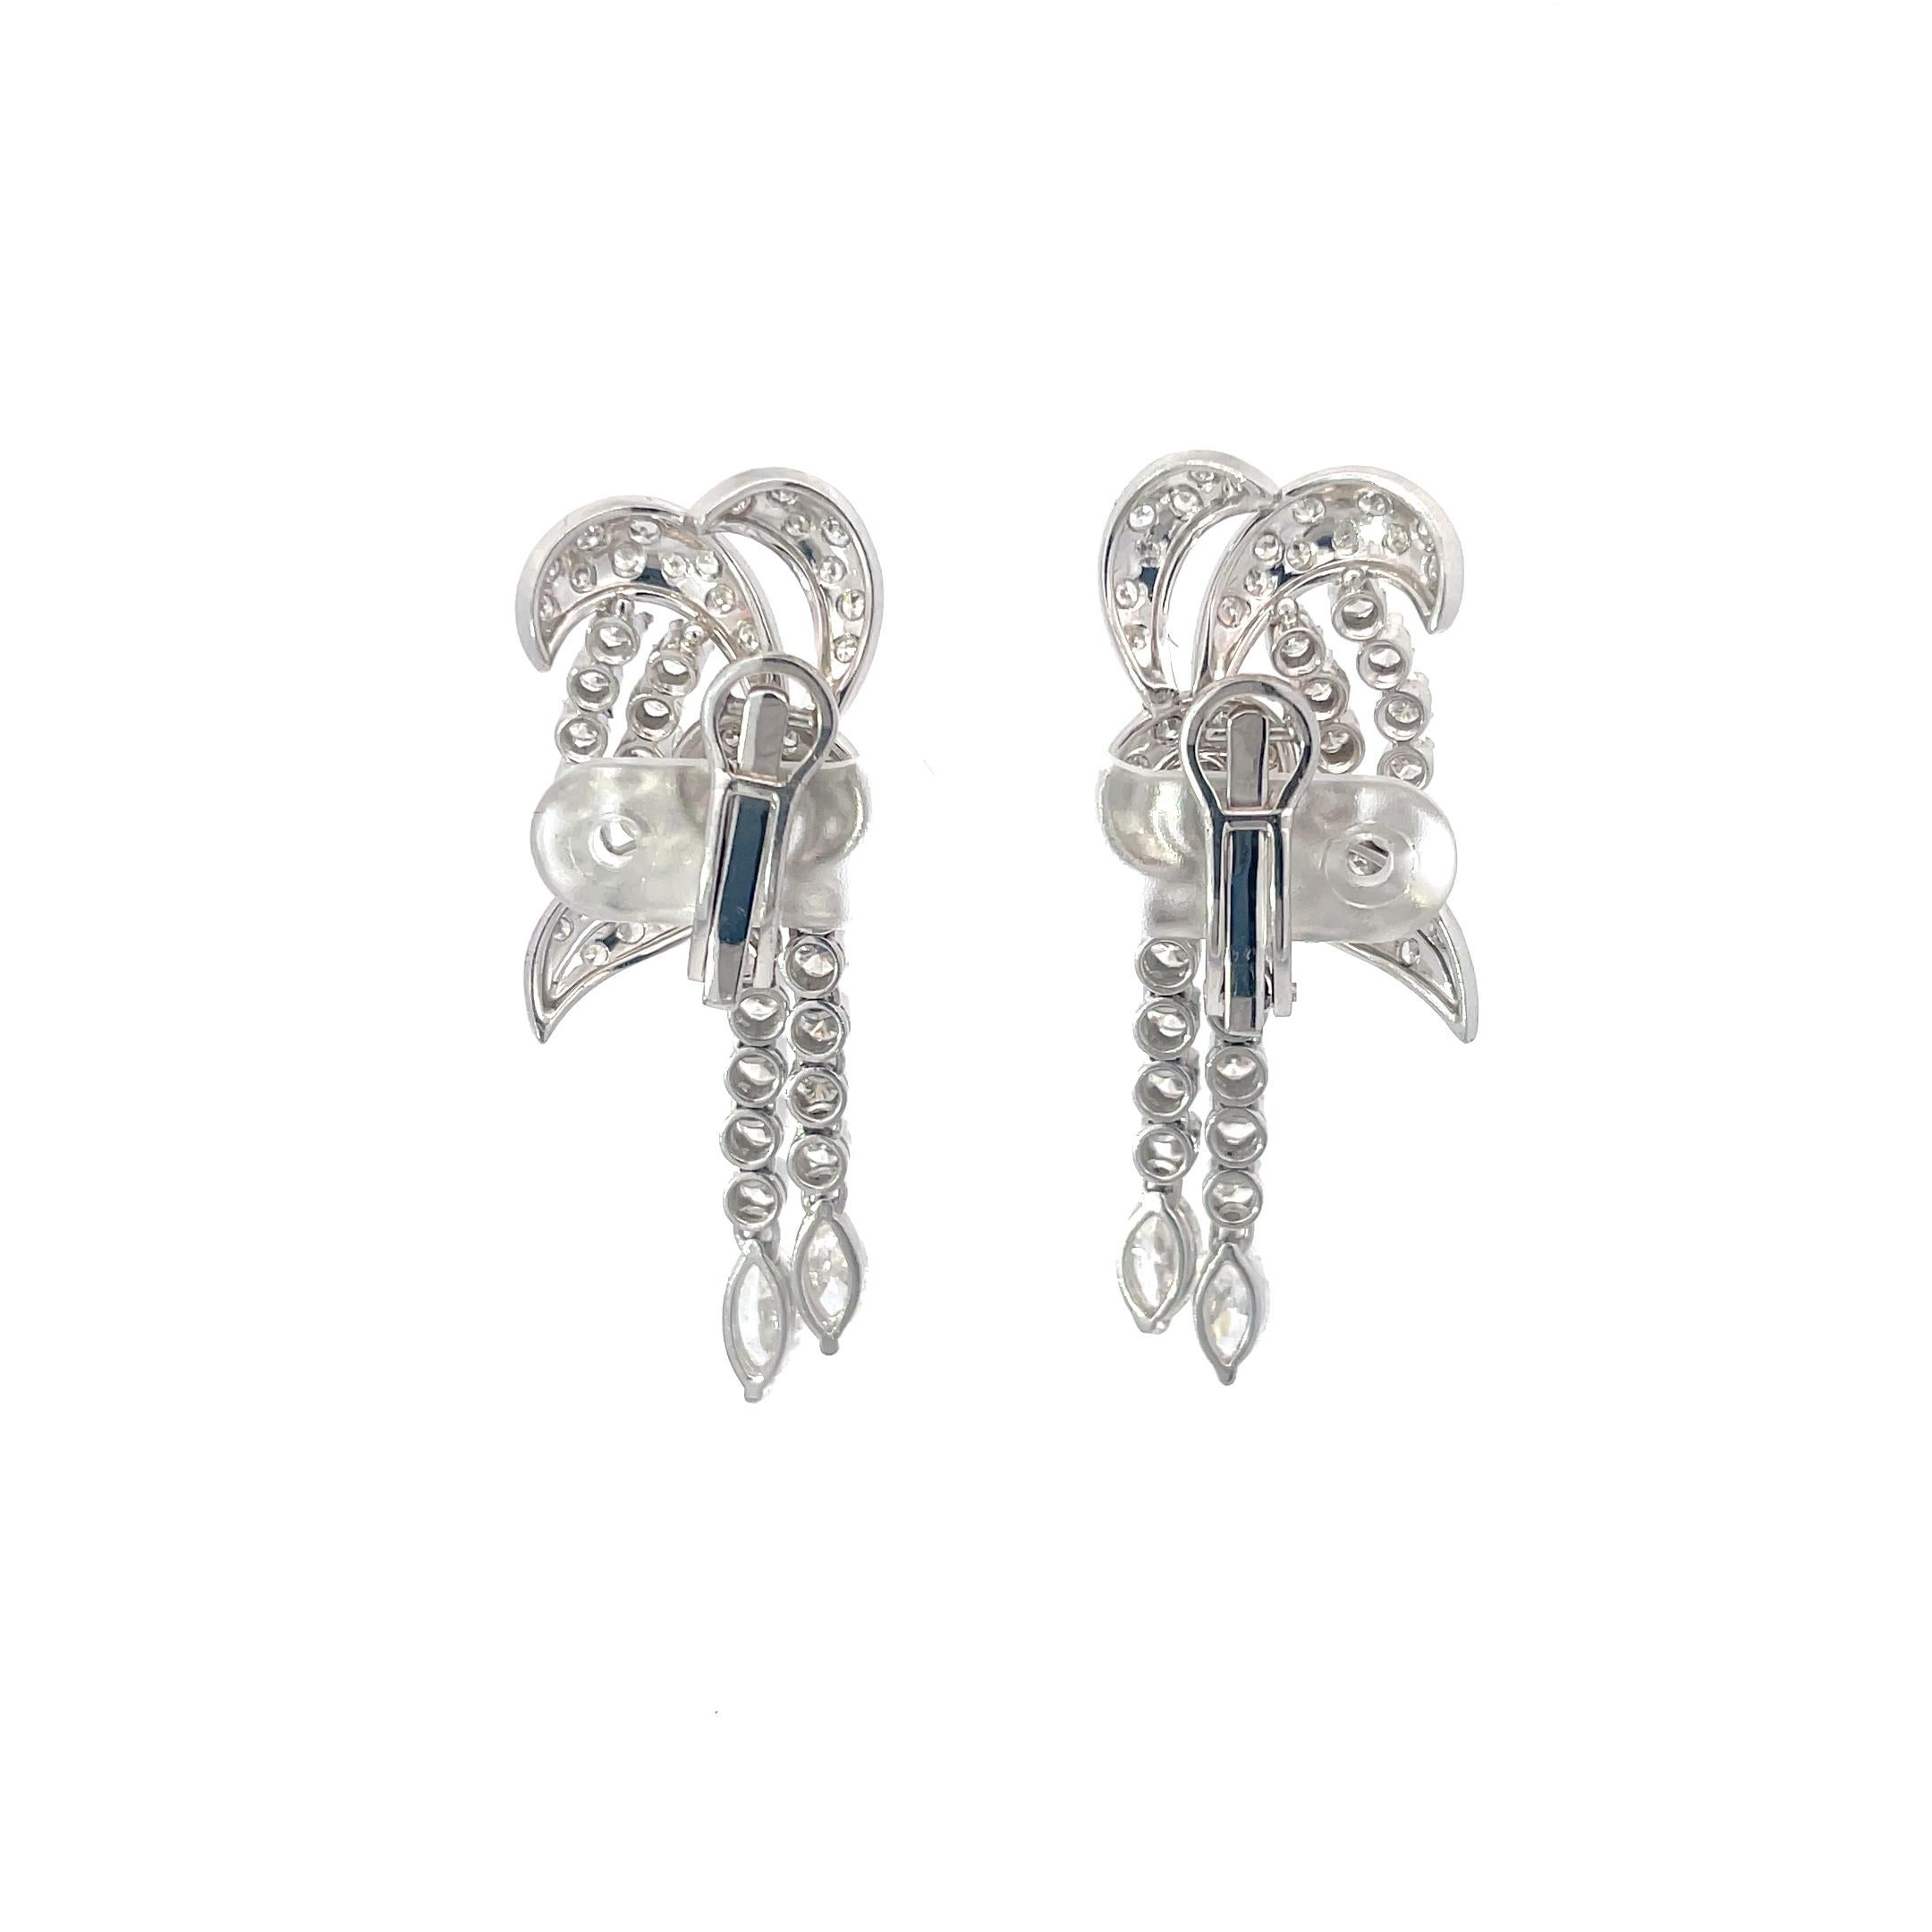 Swirl 6,25ctw Diamant-Ohrringe in Platin. Die Ohrringe bestehen aus 6,25 ct runden und marquise geschliffenen Diamanten. 
2